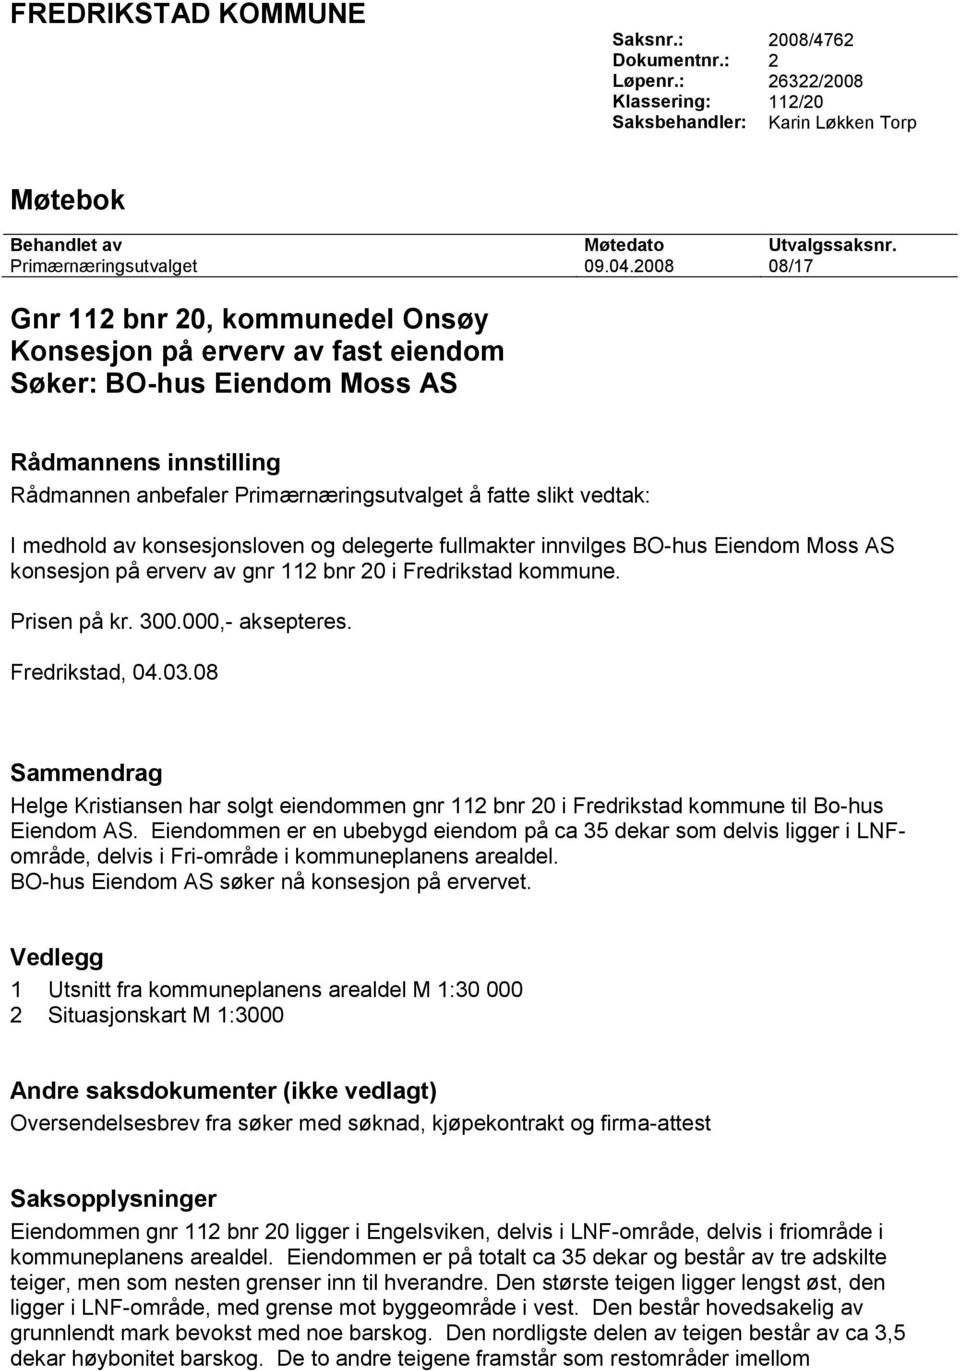 medhold av konsesjonsloven og delegerte fullmakter innvilges BO-hus Eiendom Moss AS konsesjon på erverv av gnr 112 bnr 20 i Fredrikstad kommune. Prisen på kr. 300.000,- aksepteres. Fredrikstad, 04.03.